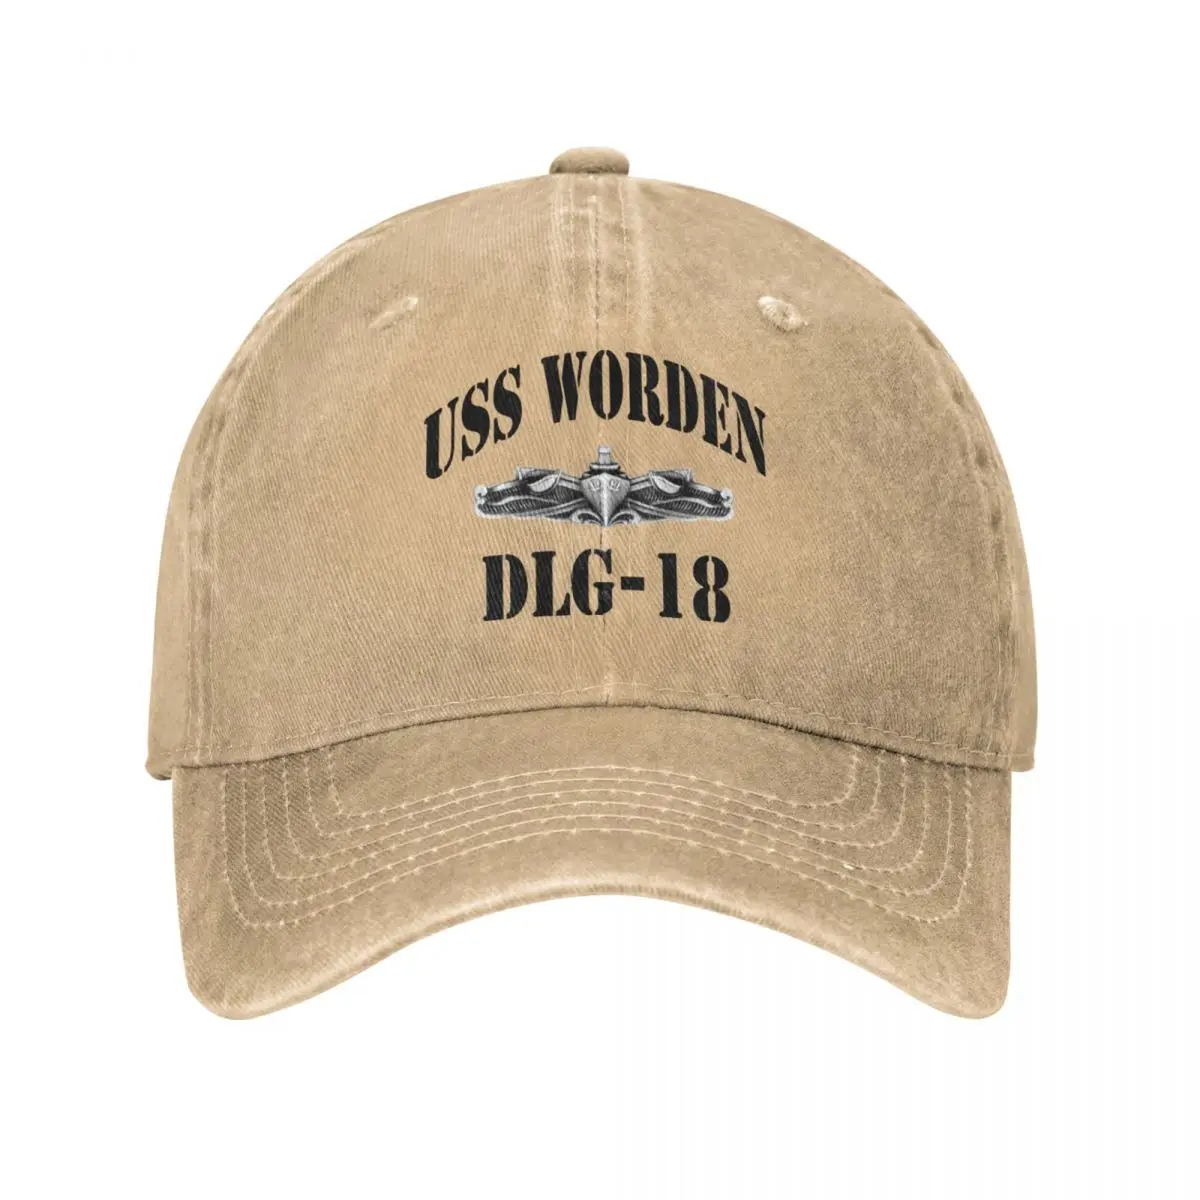 

USS WORDEN (DLG-18) SHIP'S STORE Cowboy Hat Brand Man Caps Rugby |-F-| Women Caps Men'S